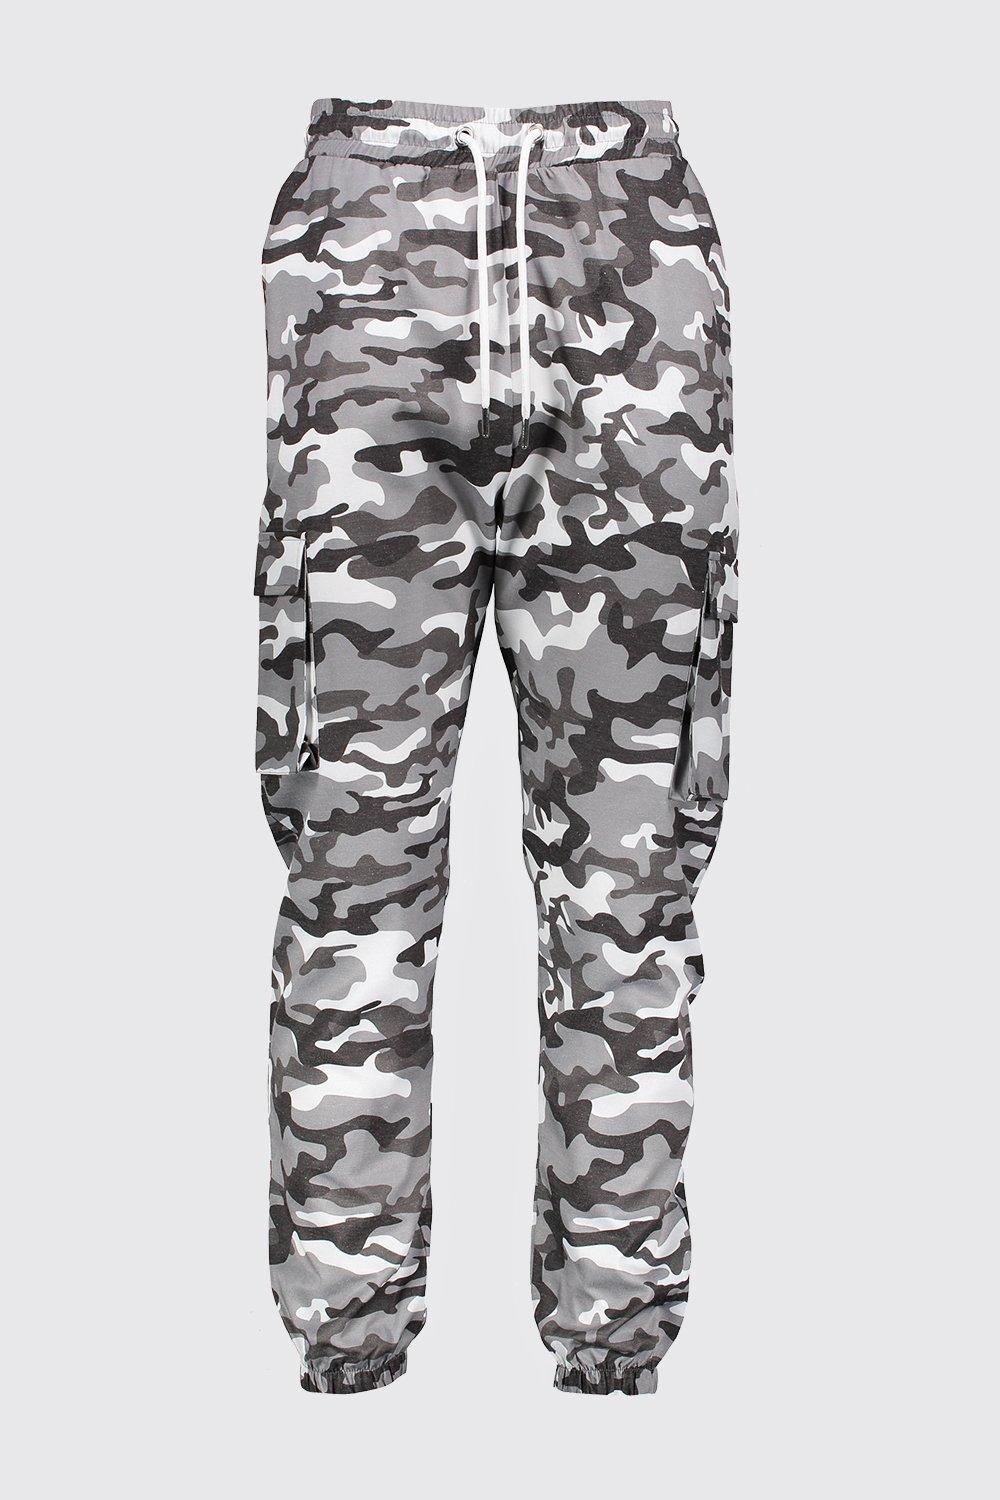 light grey camo pants